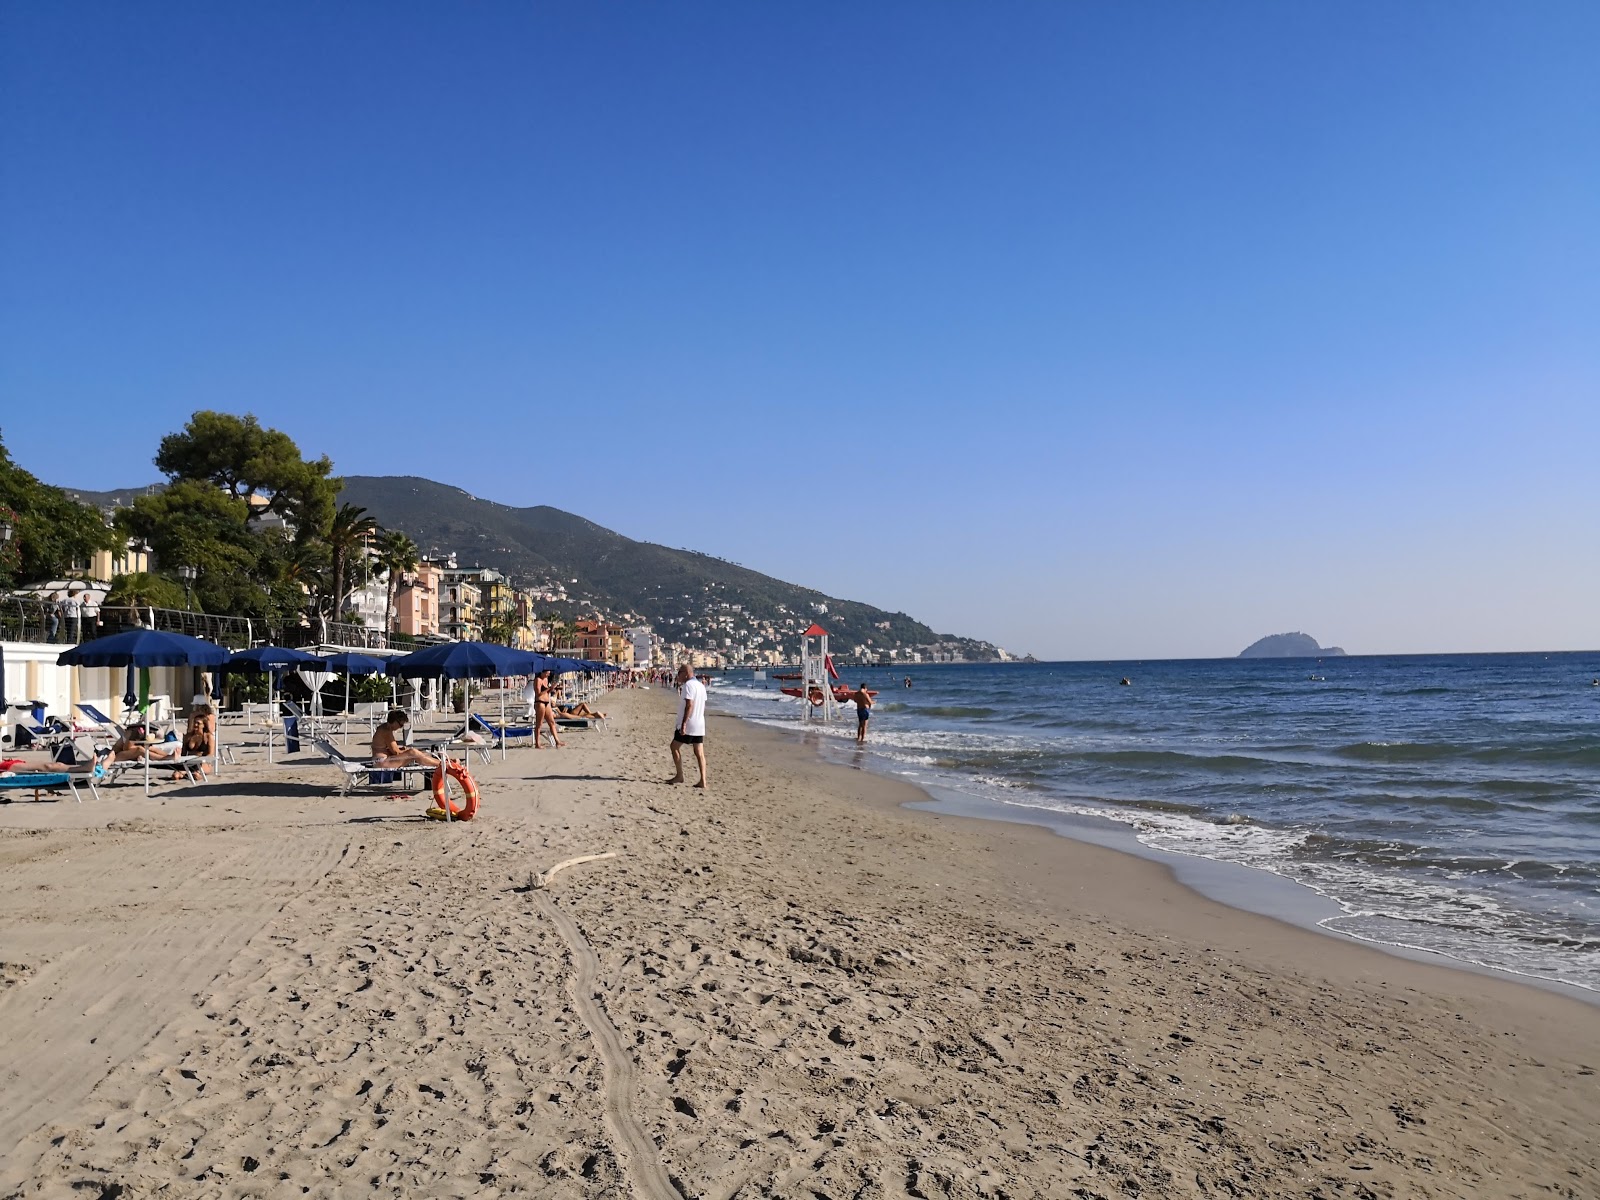 Foto von Spiaggia Attrezzata mit brauner sand Oberfläche